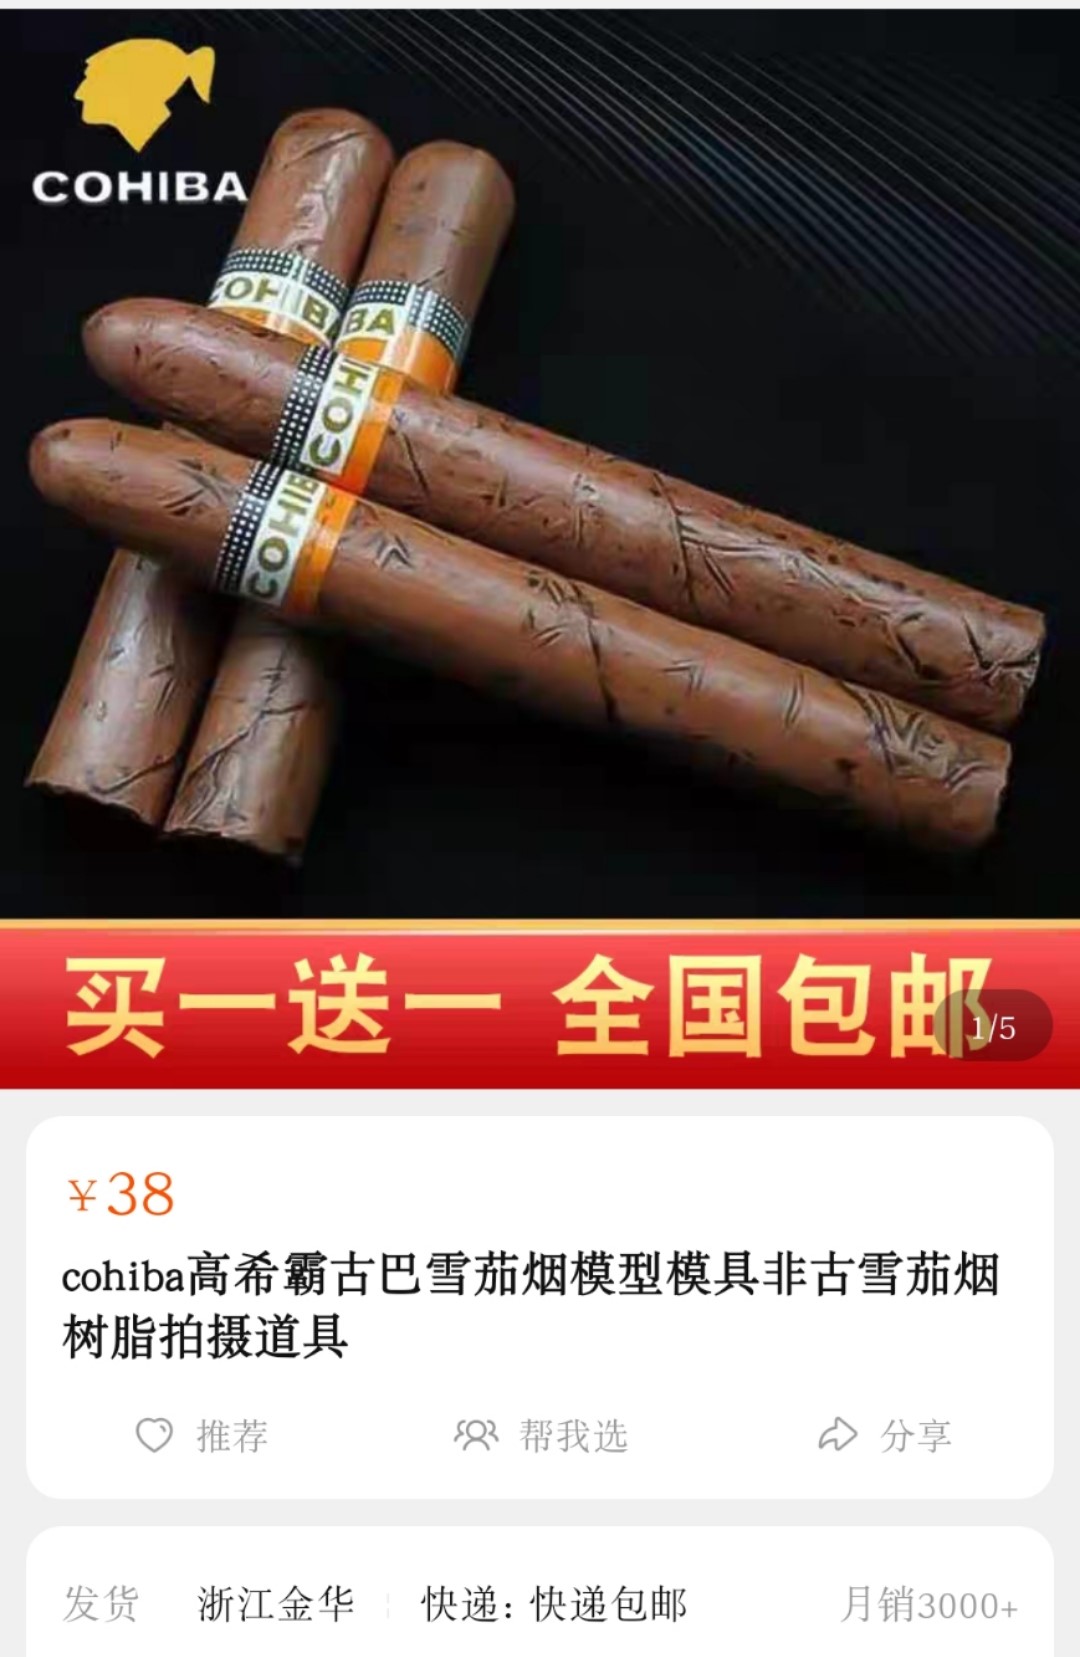 明卖“道具”、暗售雪茄：从淘宝到微信的烟草非法交易